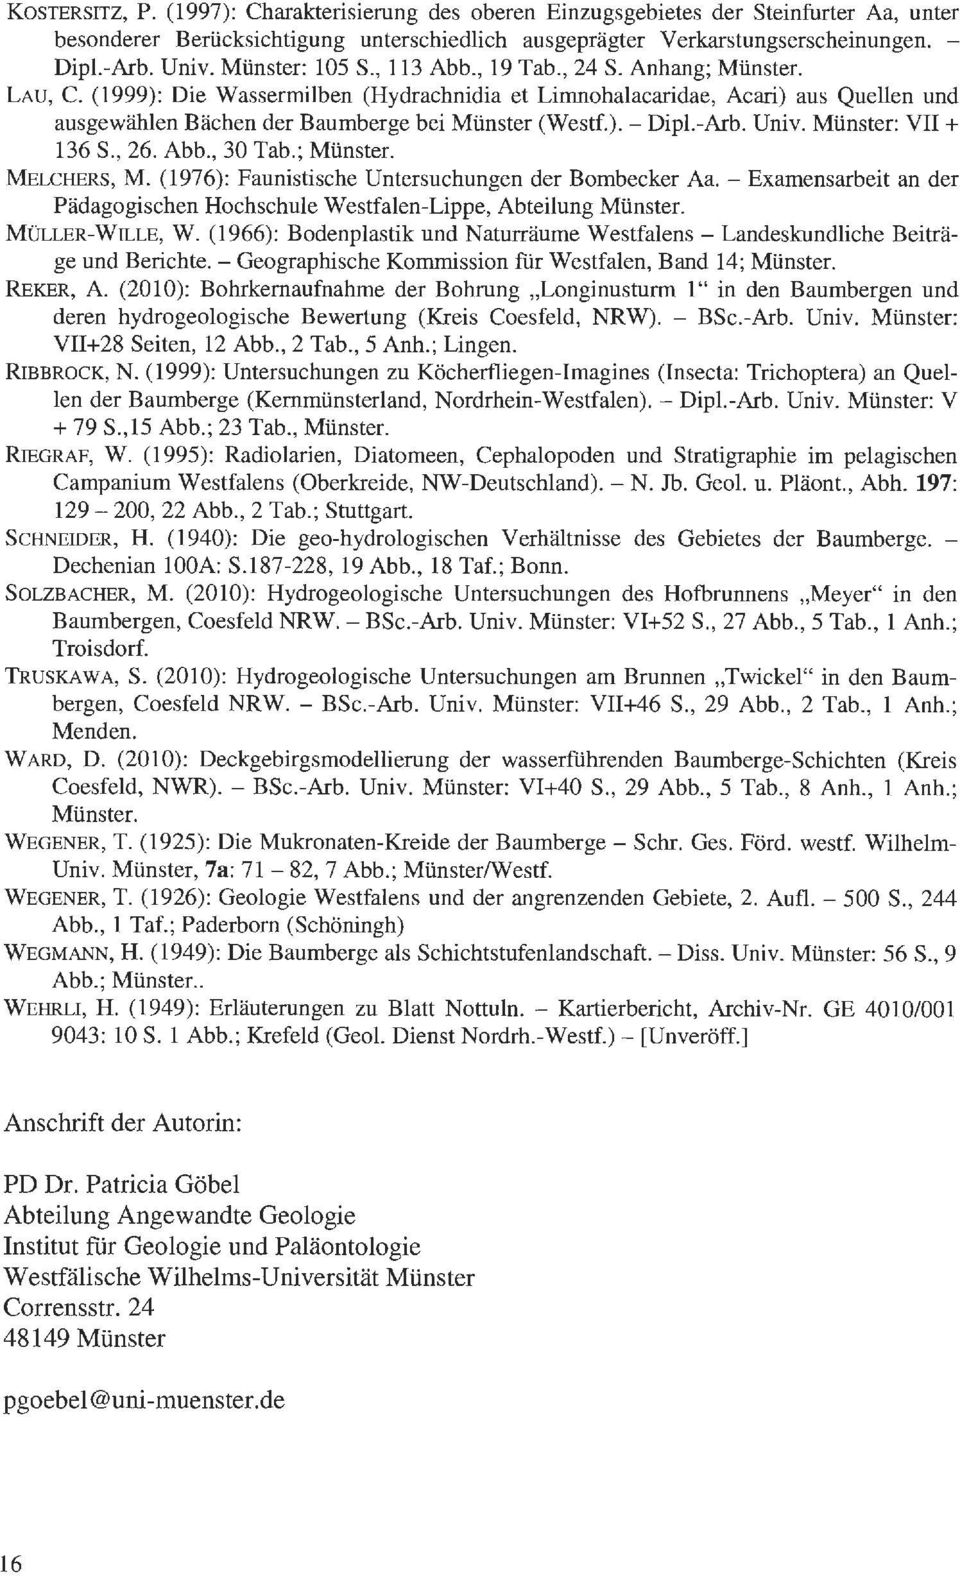 (1999): Die Wassermilben (Hydrachnidia et Limnohalacaridae, Acari) aus Quellen und ausgewählen Bächen der Baumberge bei Münster (Westf.). - Dipl.-Arb. Univ. Münster: VII+ 136 S., 26. Abb., 30 Tab.